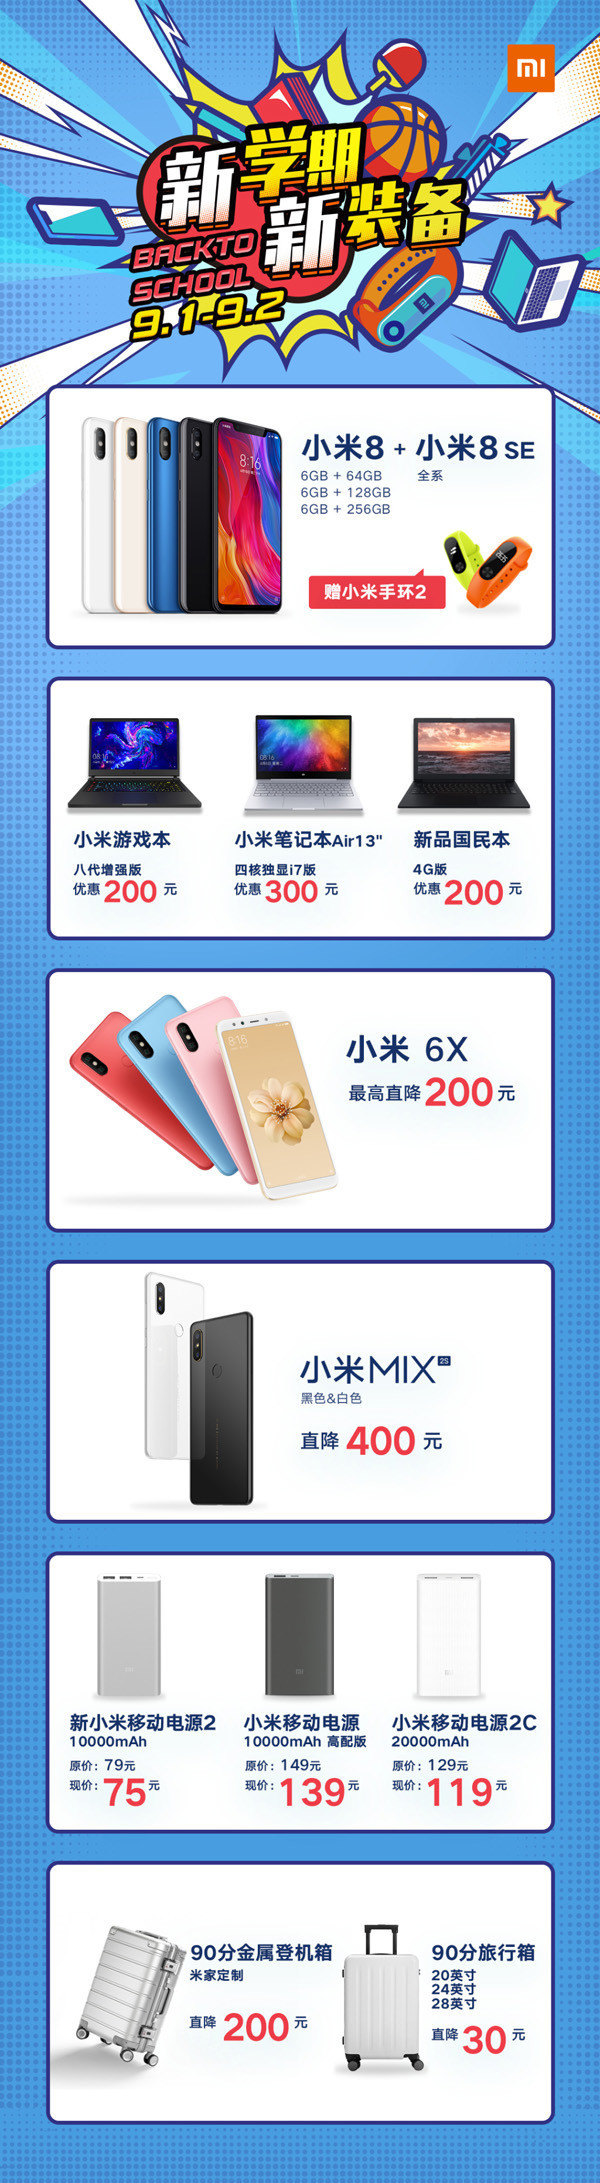 小米之家新学期特惠 买手机最高直降400